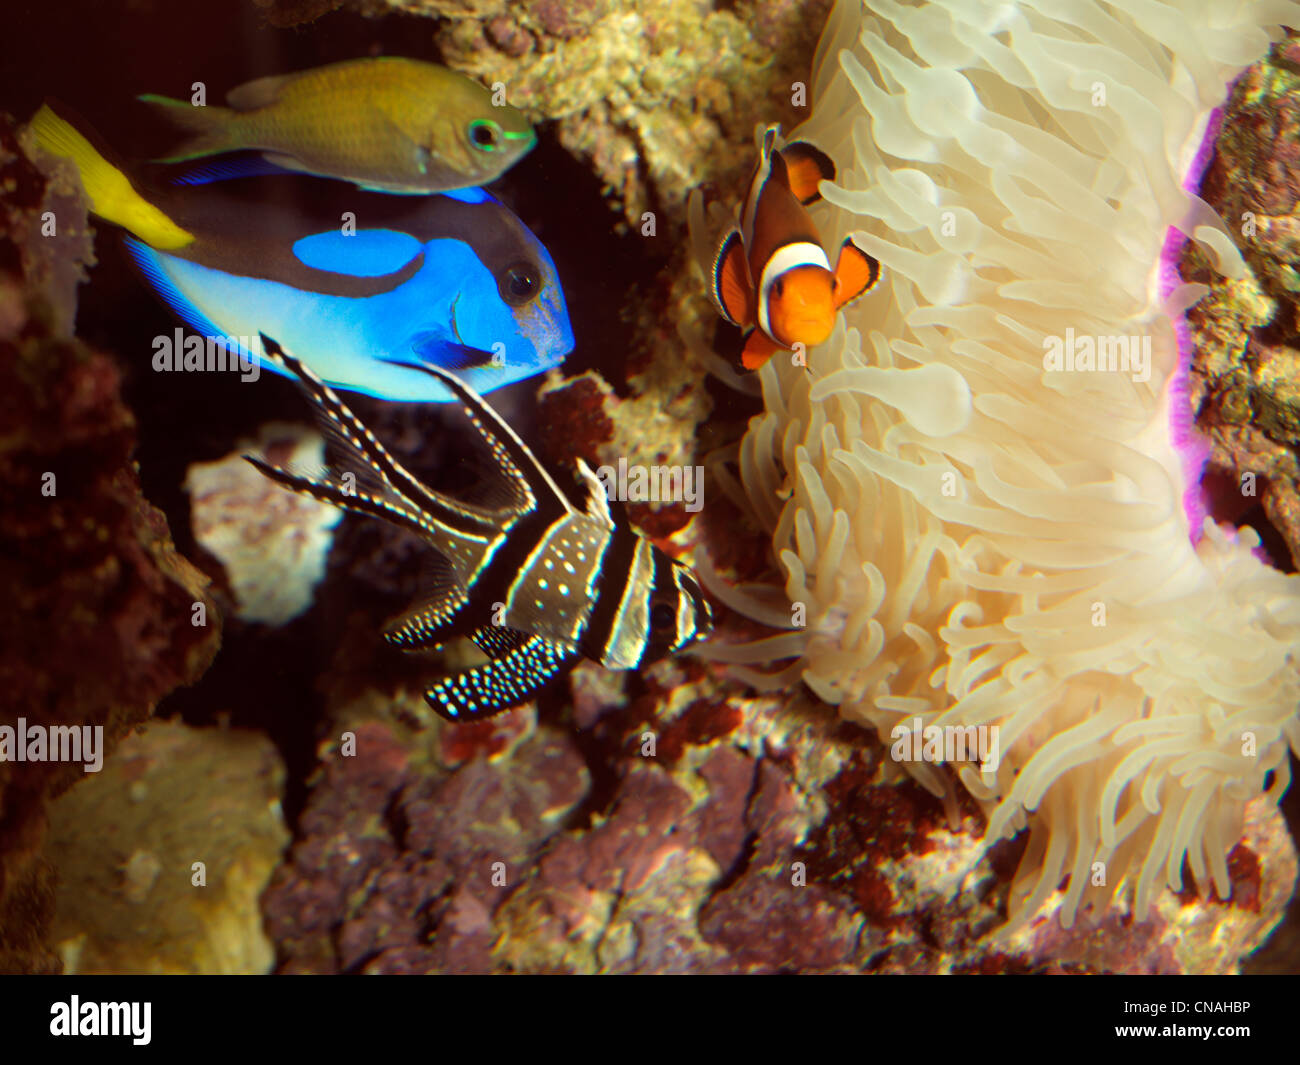 A Saltwater Aquarium Regal Tang (Dory), Clownfish And Banggai Cardinalfish With Magnifica Anemone Stock Photo